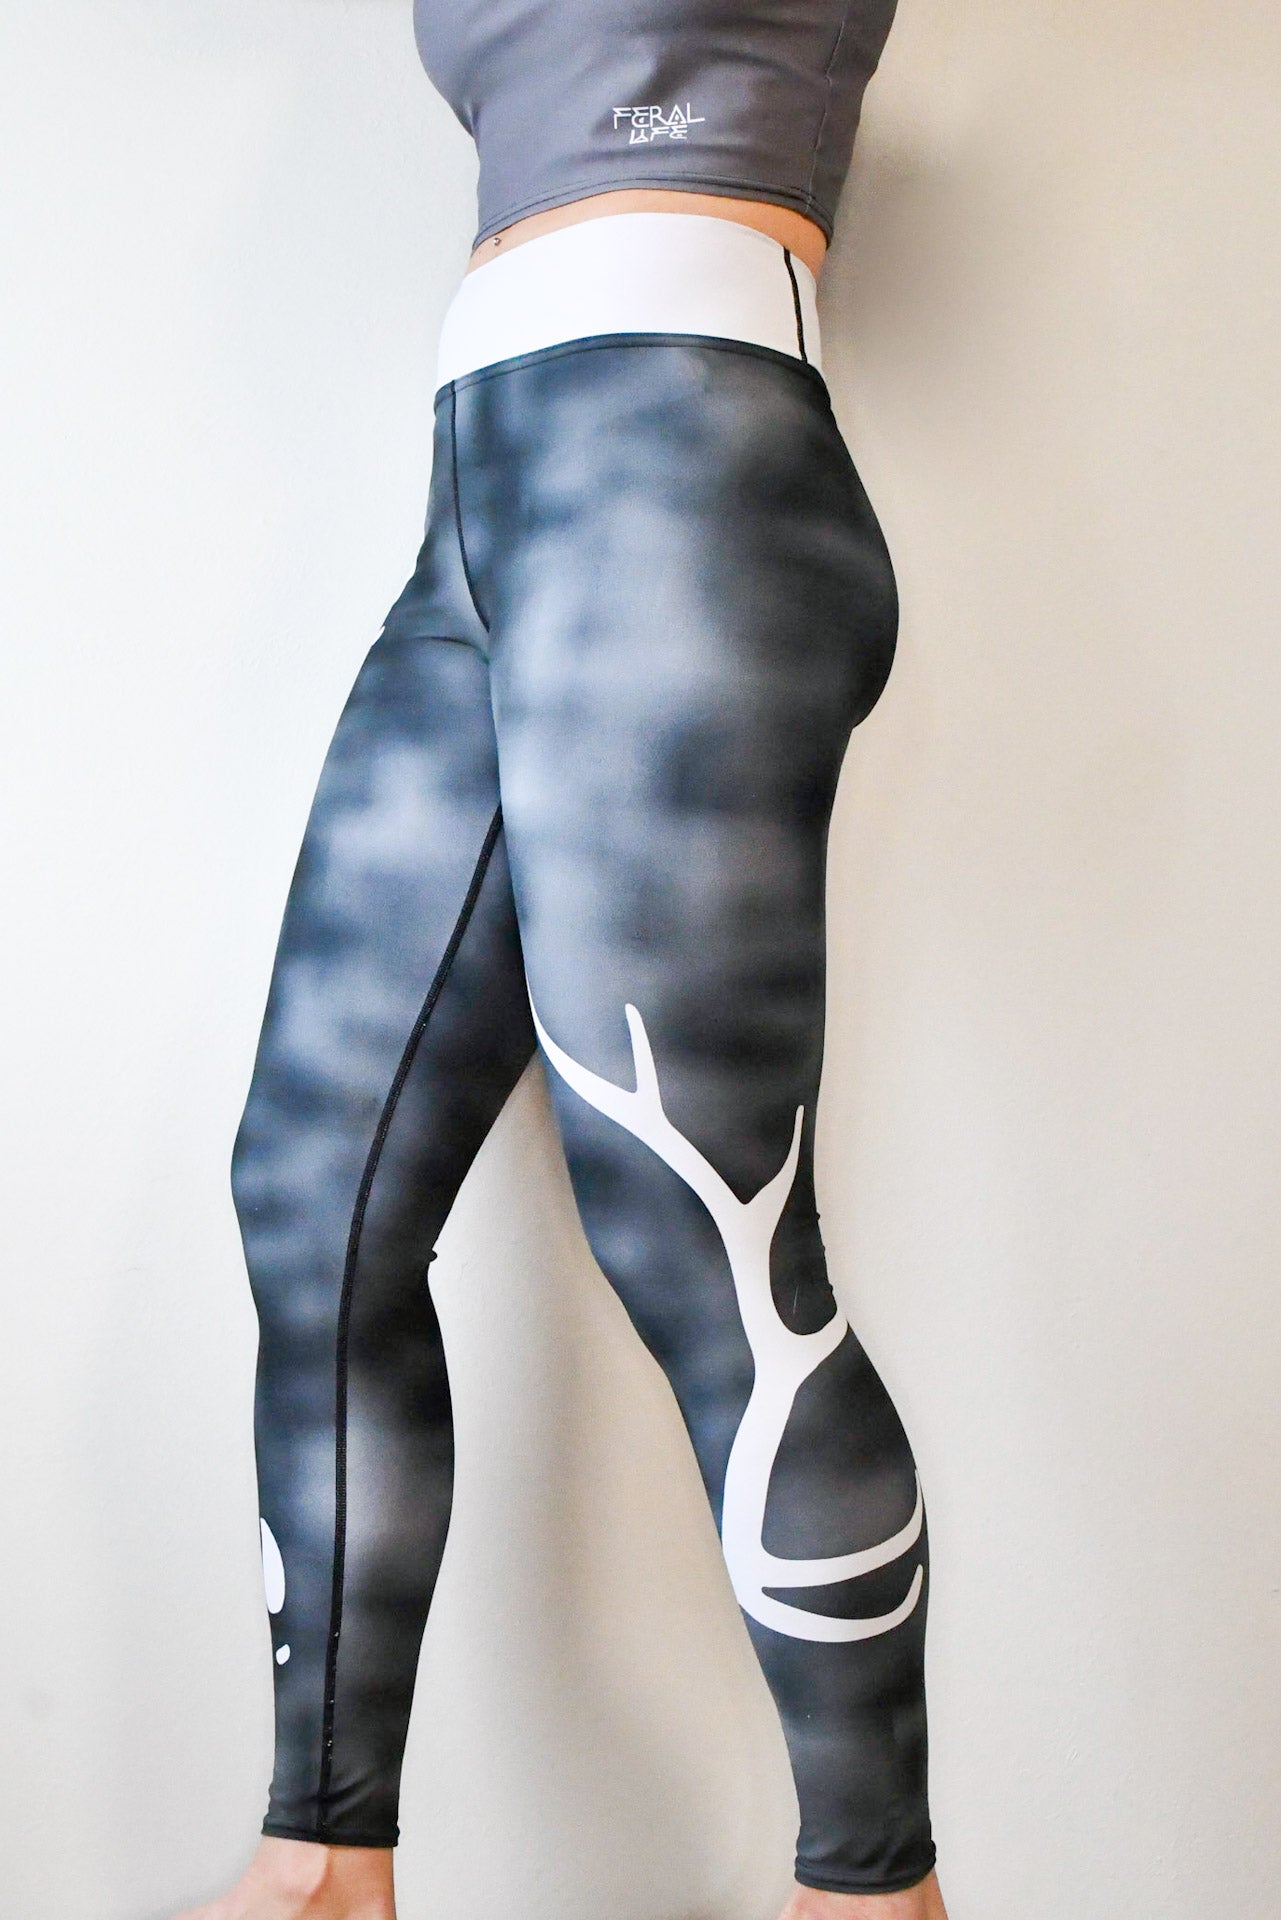 Women's OM TOTEM Black Leggings Sacred Geometry Yoga Clothing